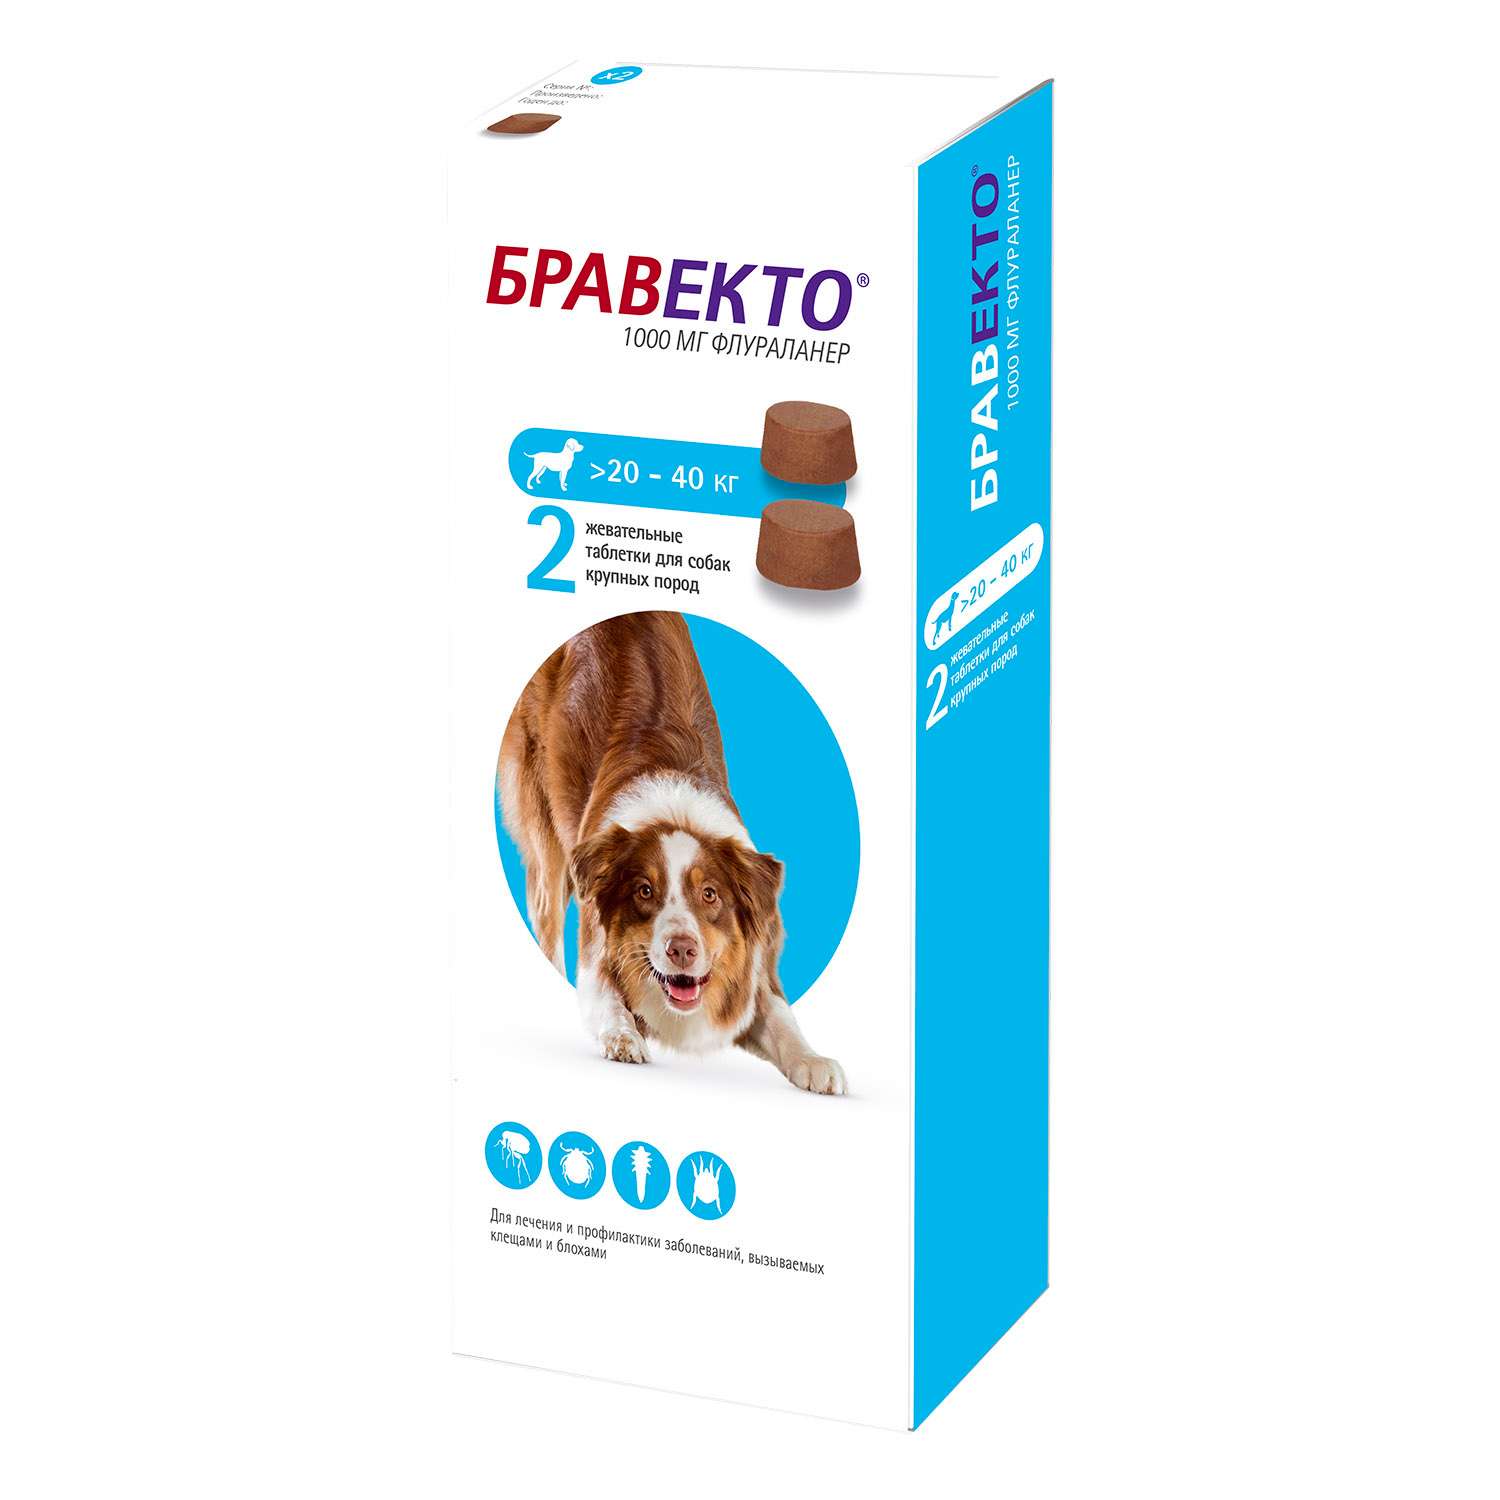 Бравекто купить рязань. Бравекто для собак 20-40 кг таблетки. Бравекто (Bravecto) 20-40 кг, таблетка 1000 мг. Бравекто 1000 мг. Бравекто спот он д/собак (1400 мг) 40-56 кг (10 уп/бокс).